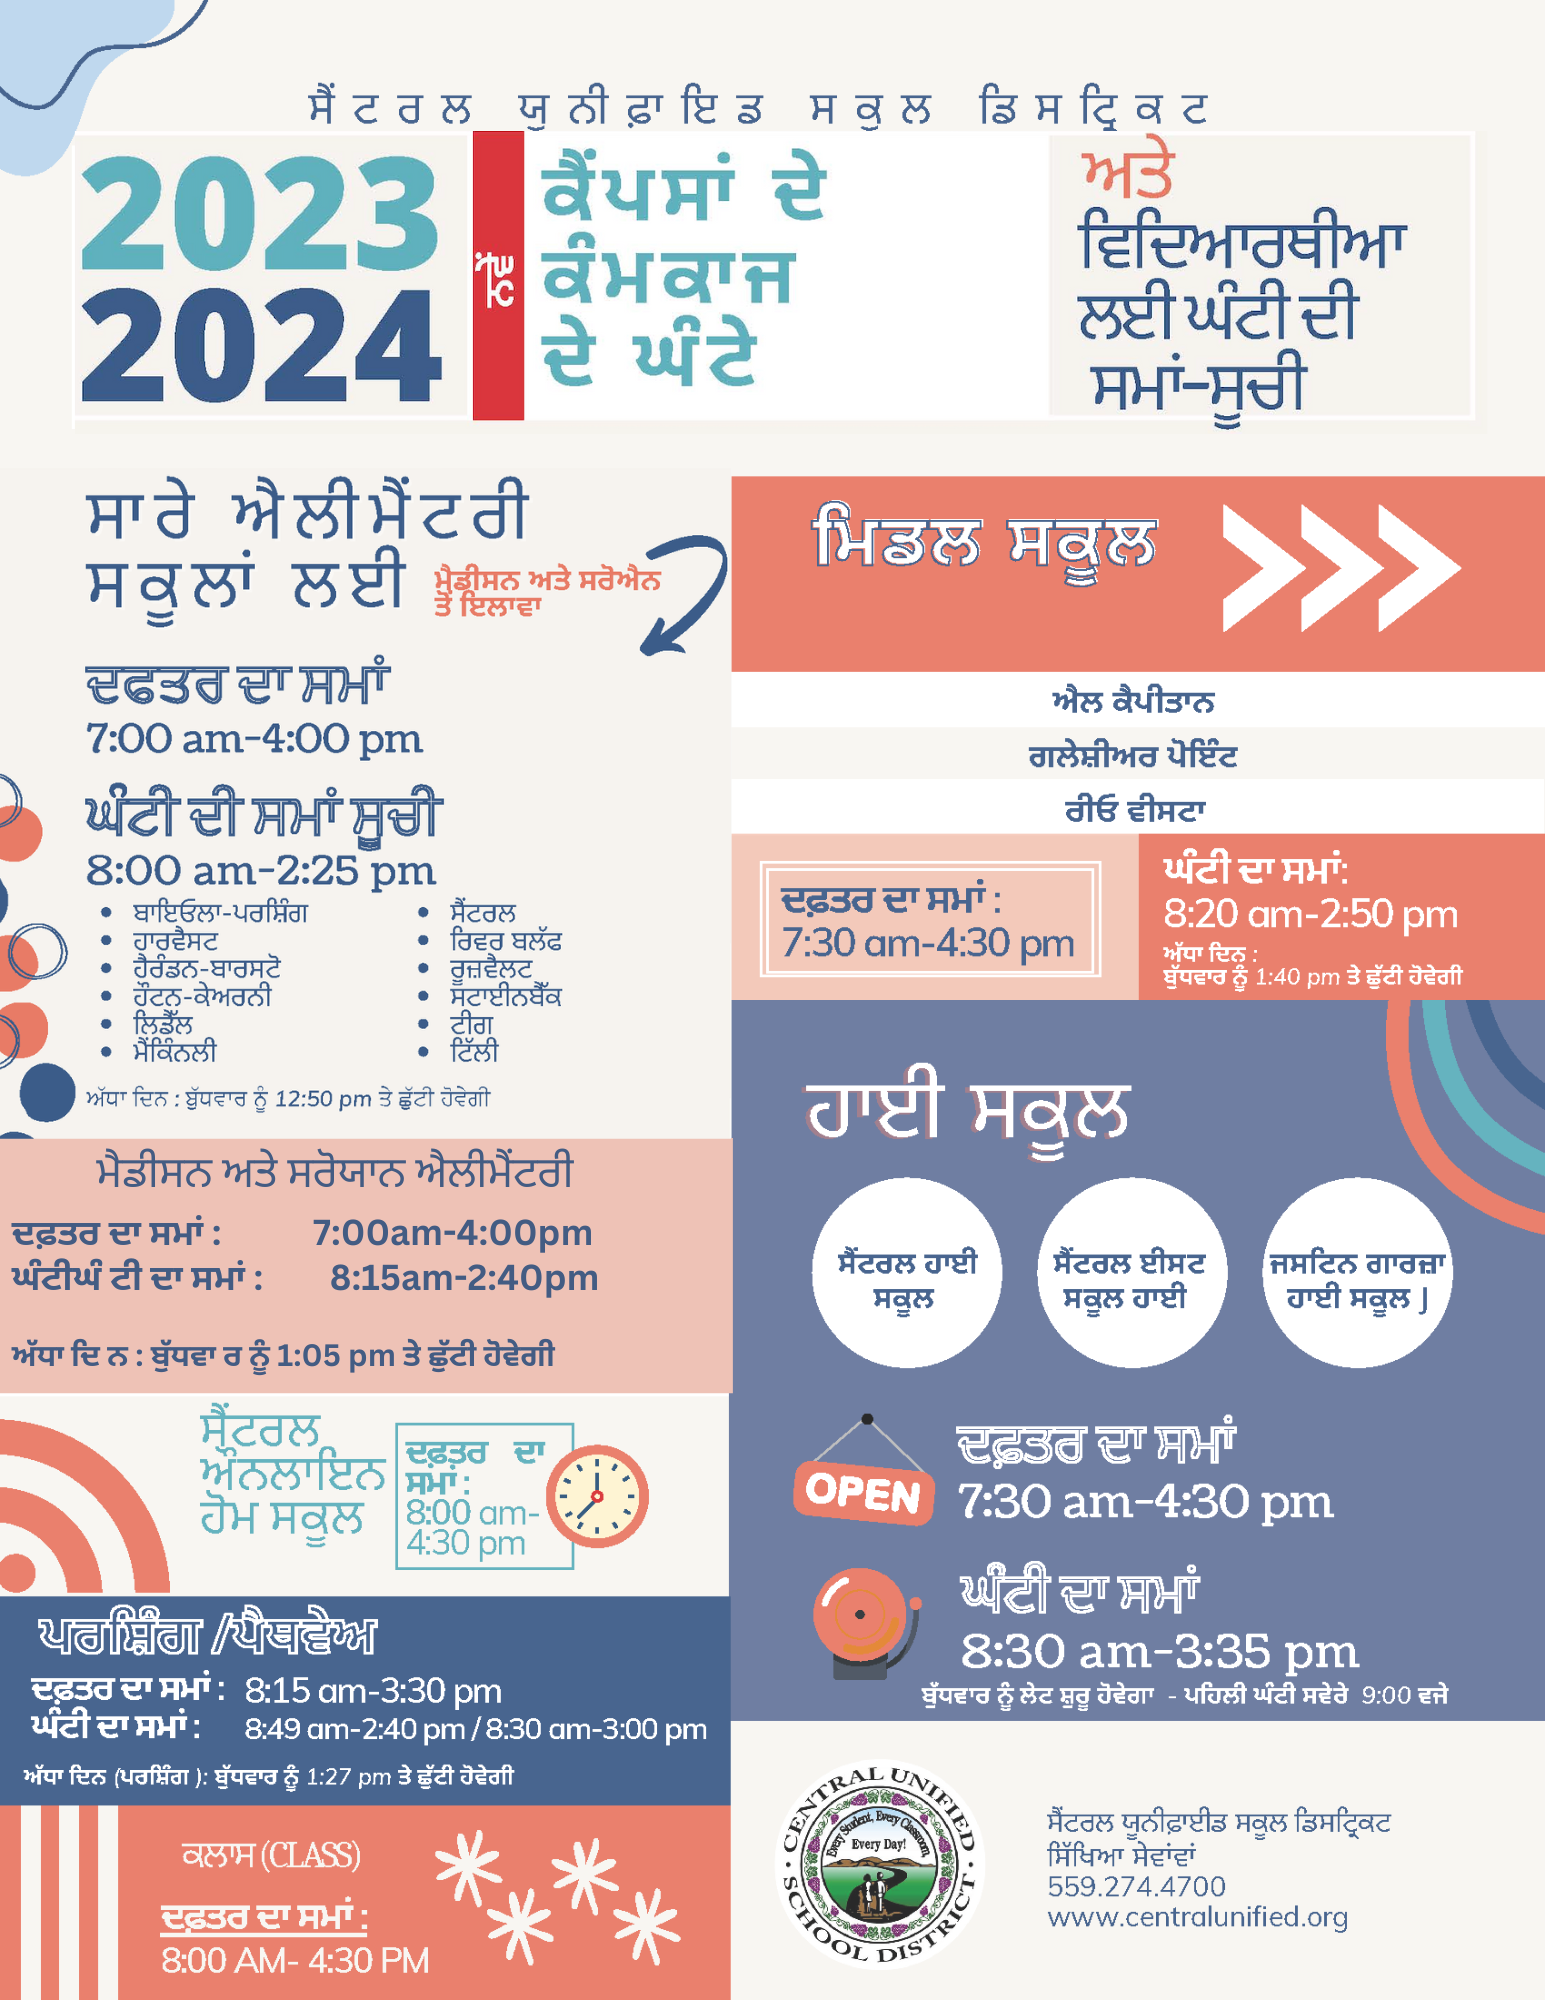 2023-2024 Bell Schedule in Punjabi